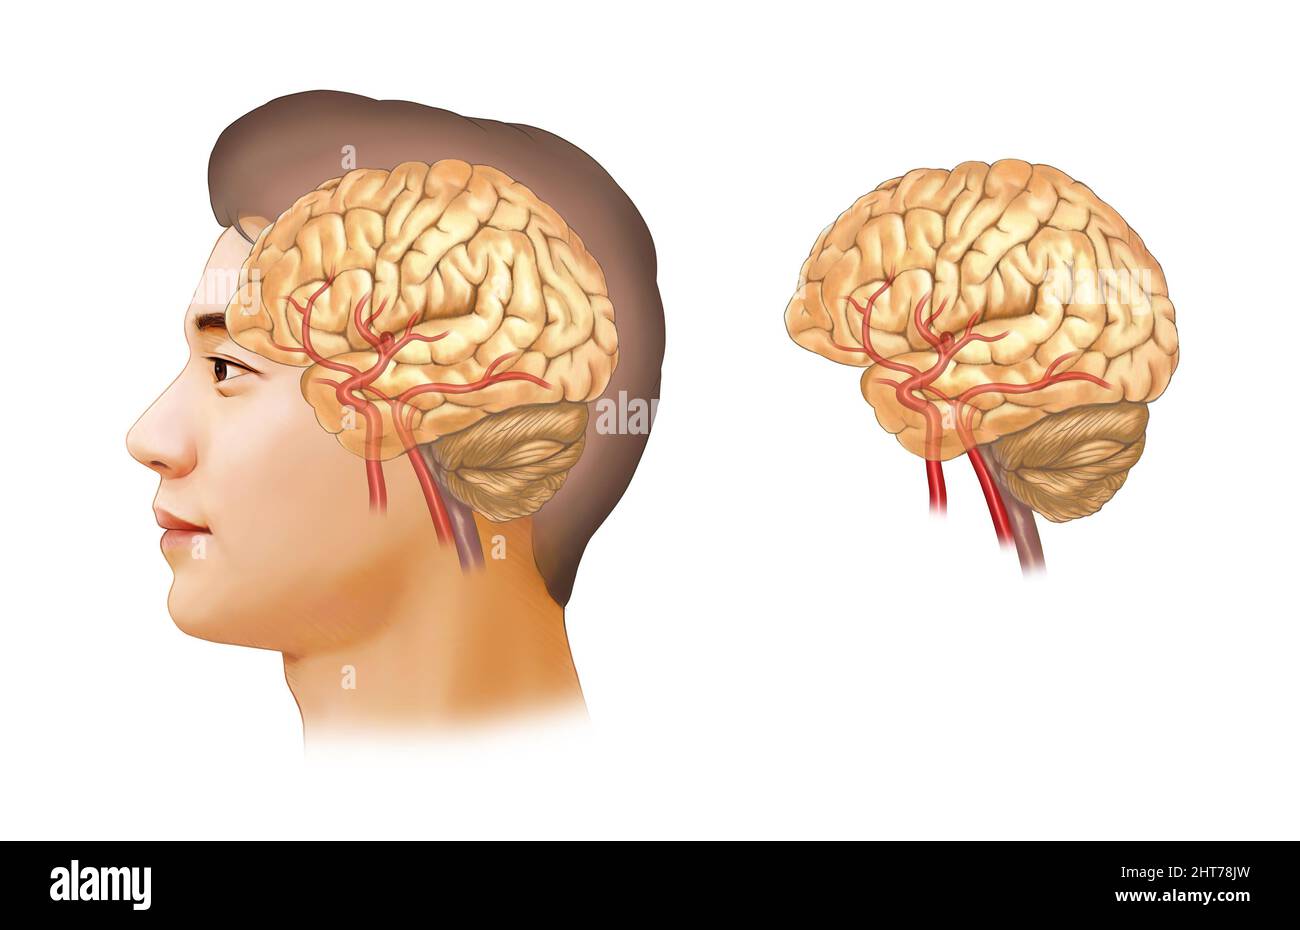 Une illustration réaliste de l'anatomie de l'anévrisme cérébral Banque D'Images